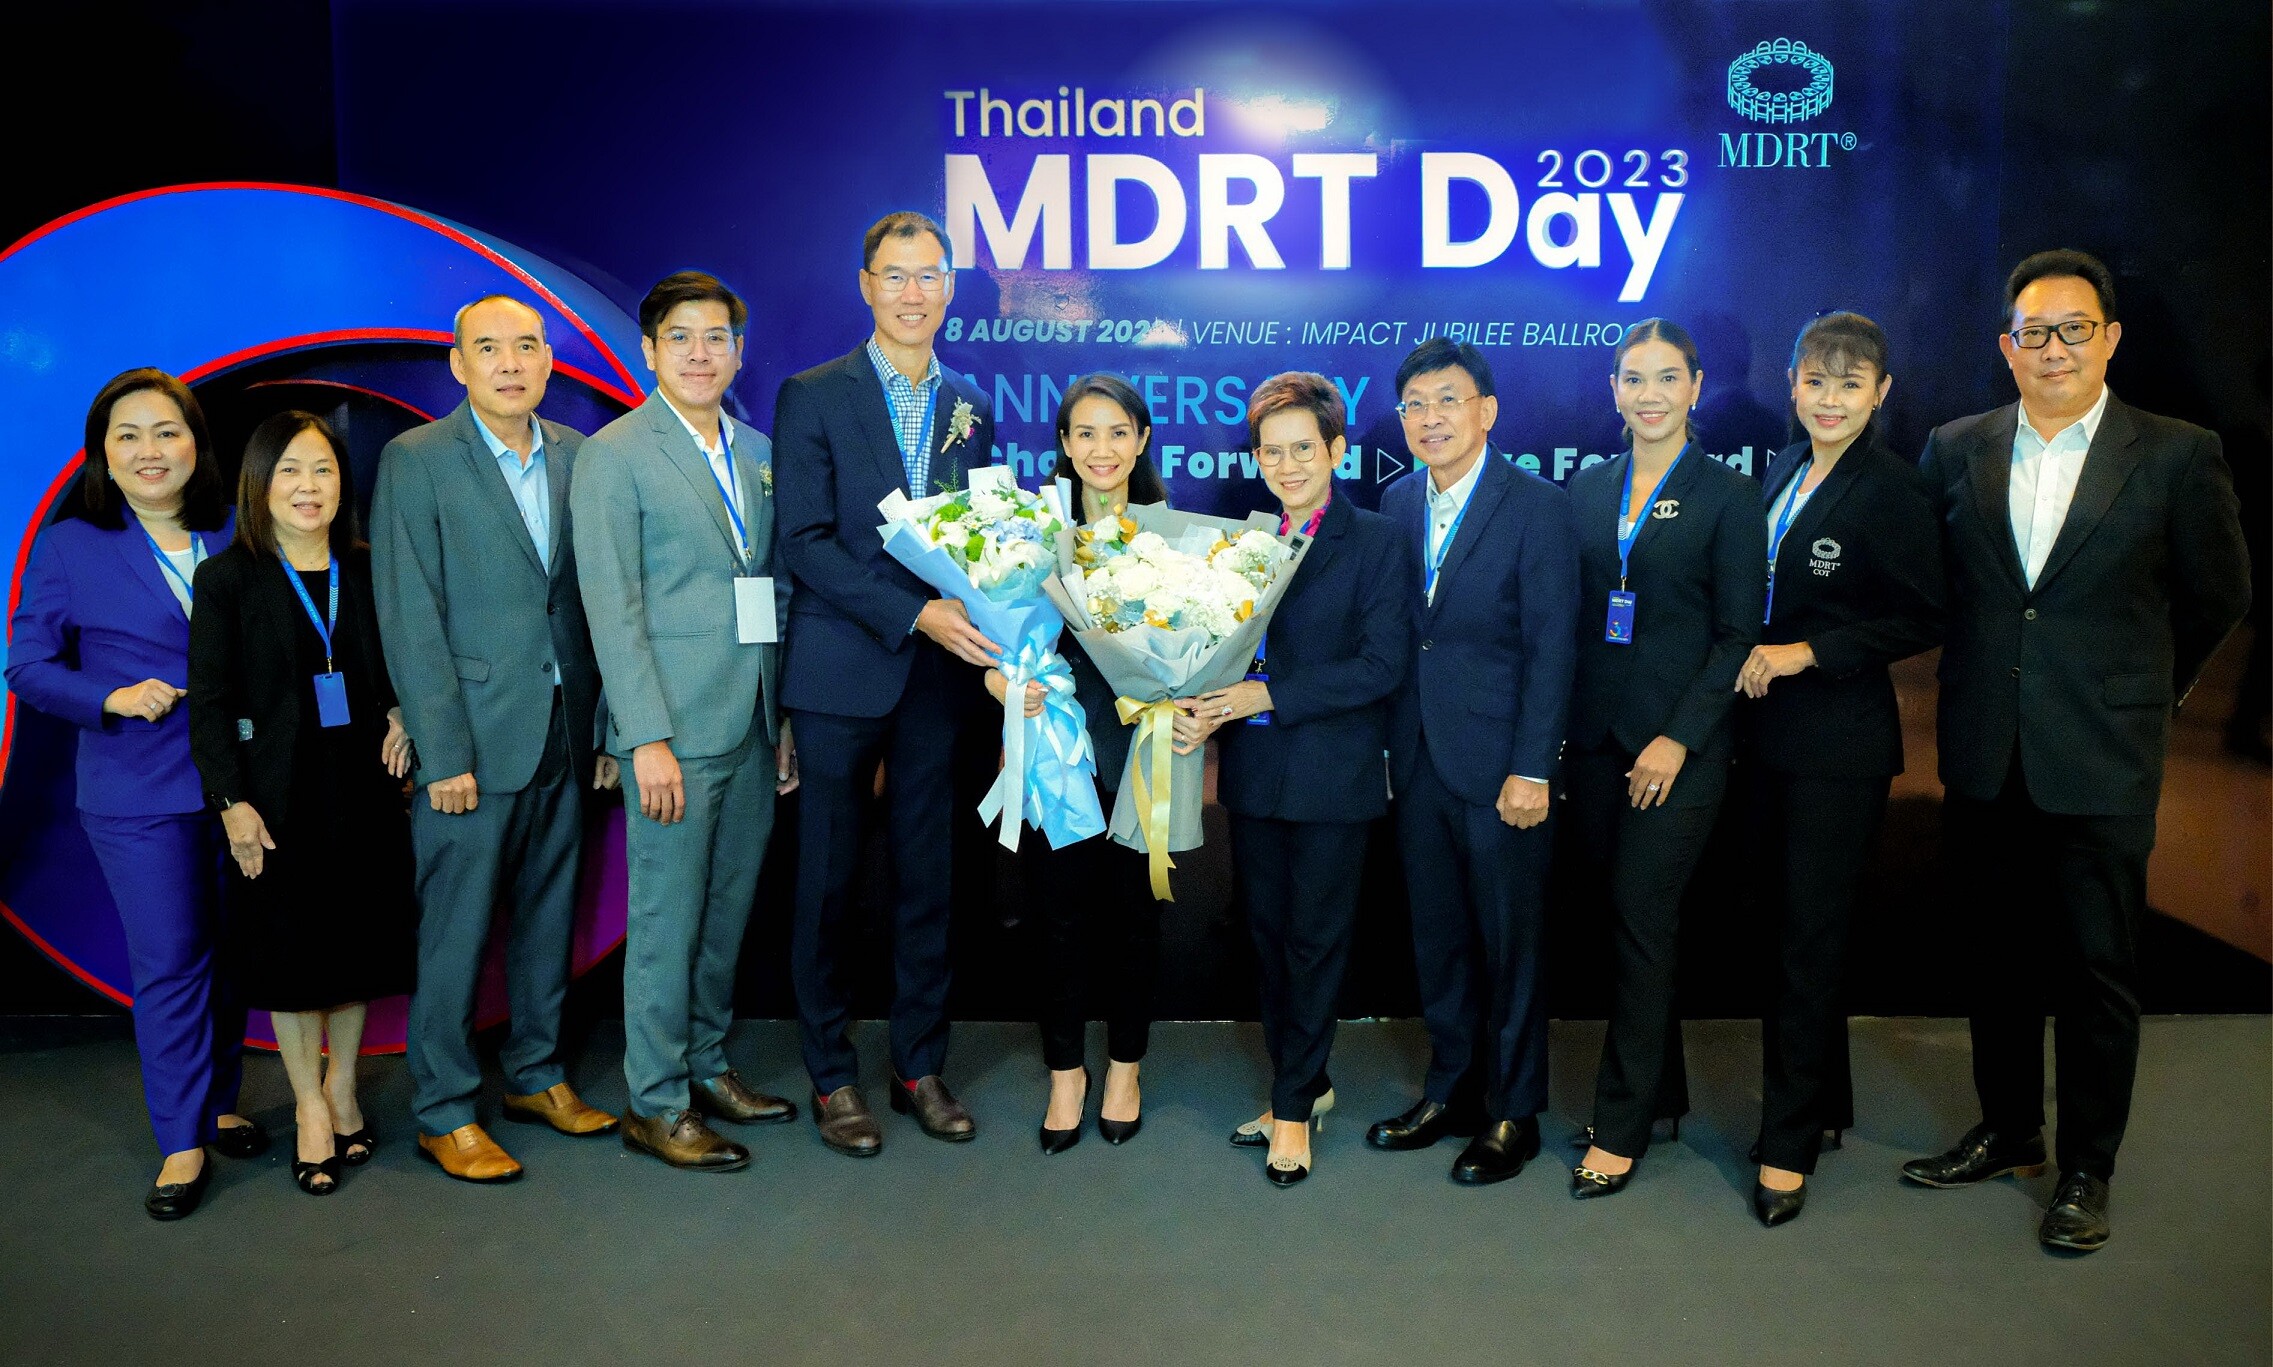 กรุงเทพประกันชีวิต แสดงความยินดีกับ "เพราพรรณ วัชรกาฬ" ที่ปรึกษาการเงิน CFP(R) ได้รับเลือกเป็นประธาน MDRT Thailand คนใหม่